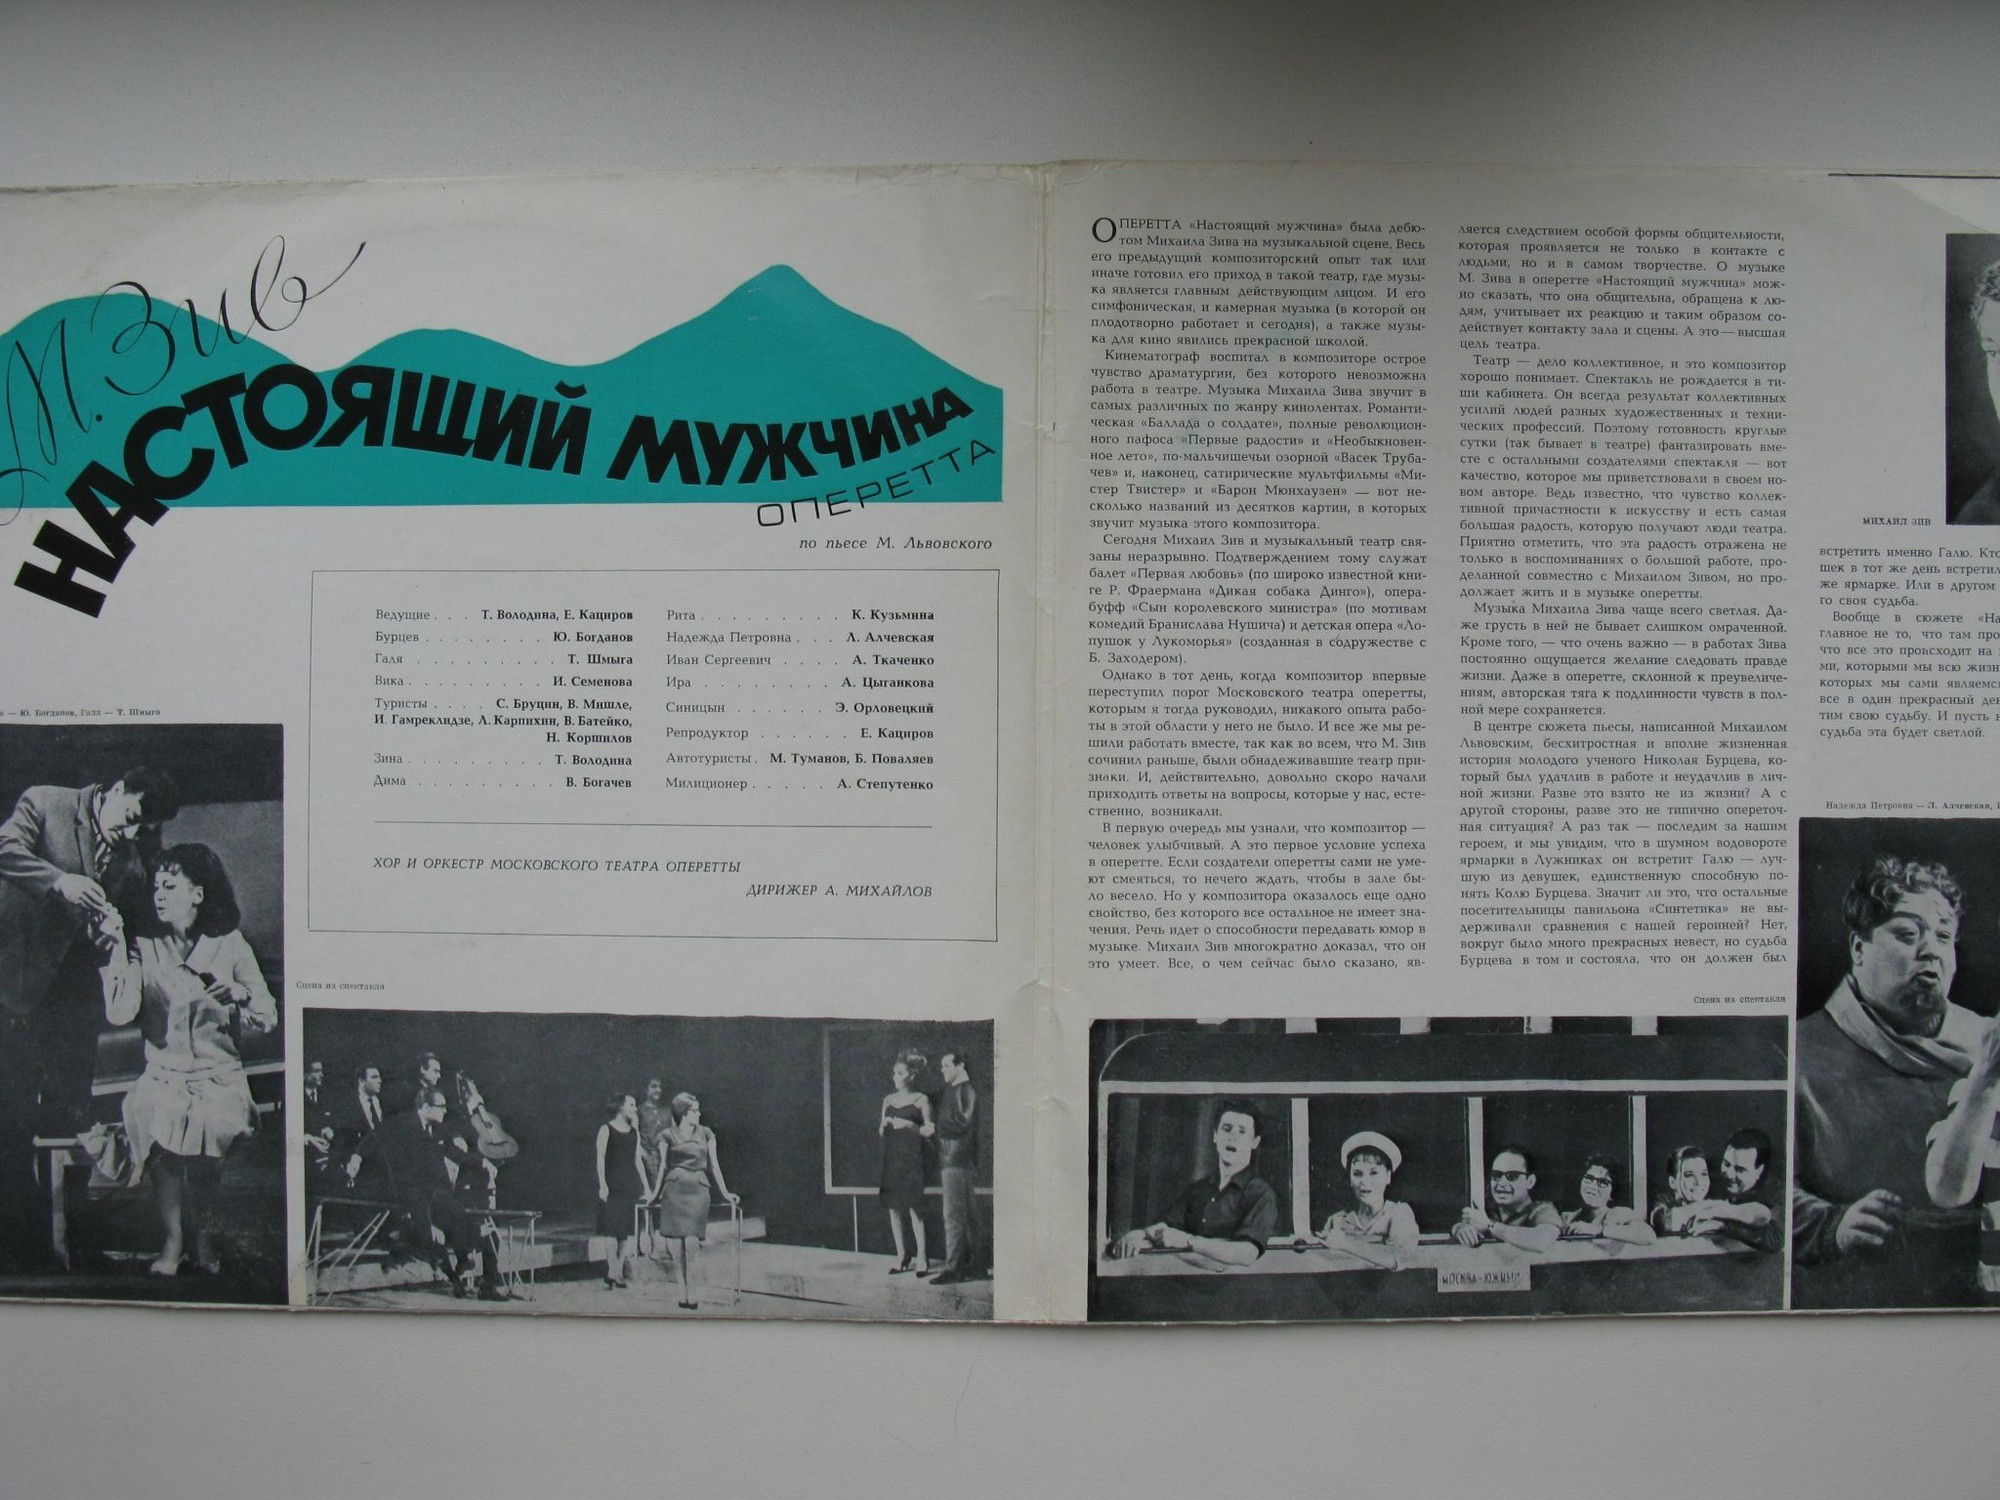 М. ЗИВ (1921): «Настоящий мужчина», монтаж оперетты по пьесе М. Львовского.